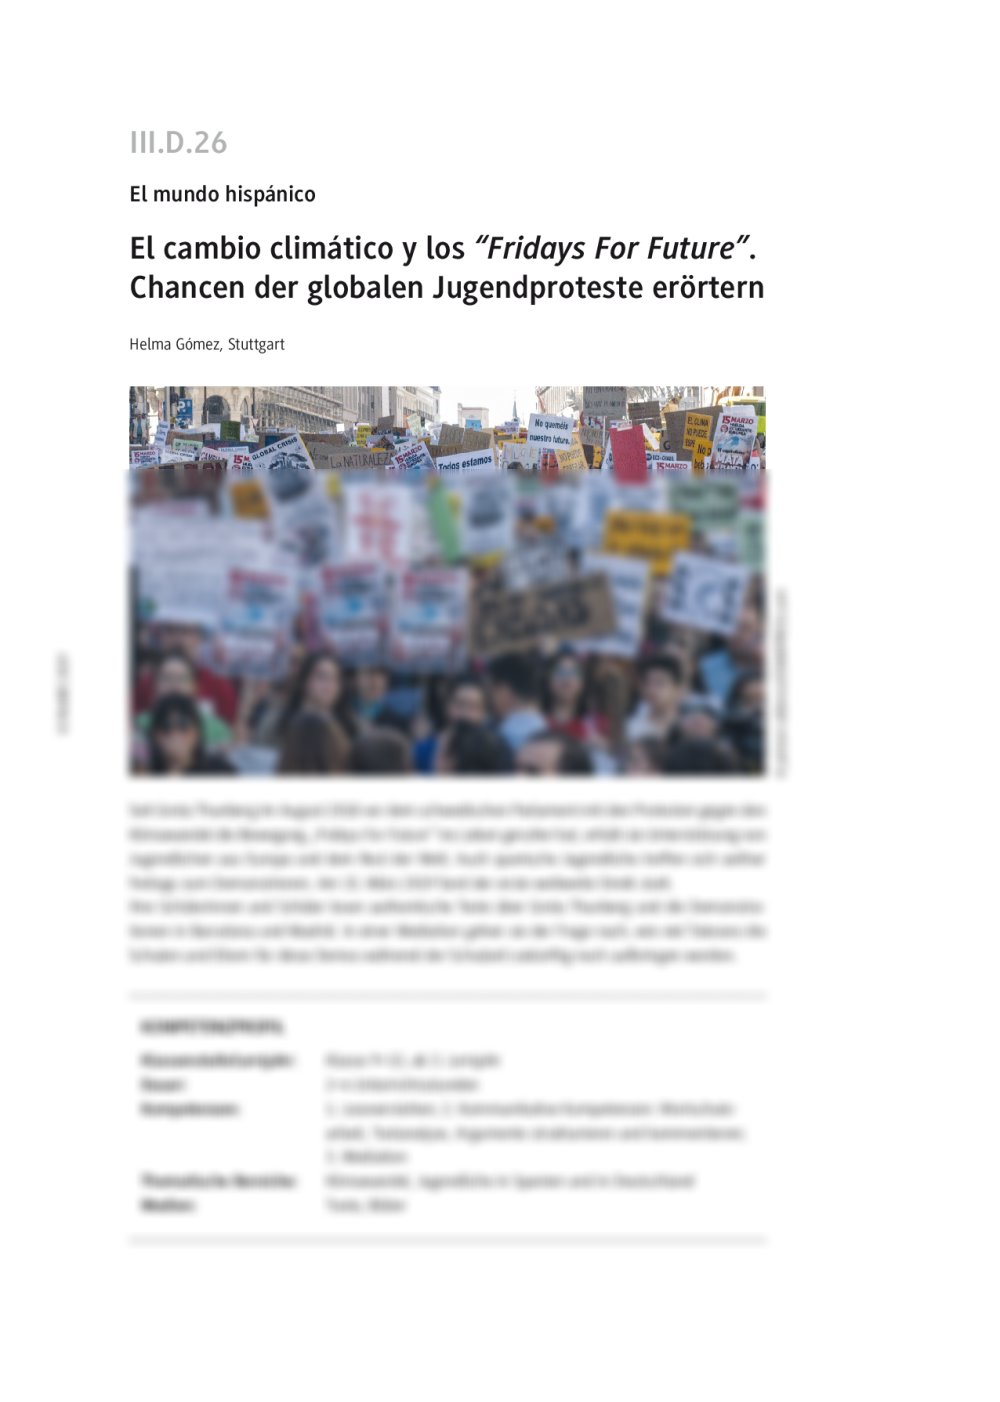 Chancen der globalen Jugendproteste "Fridays For Future" erörtern - Seite 1